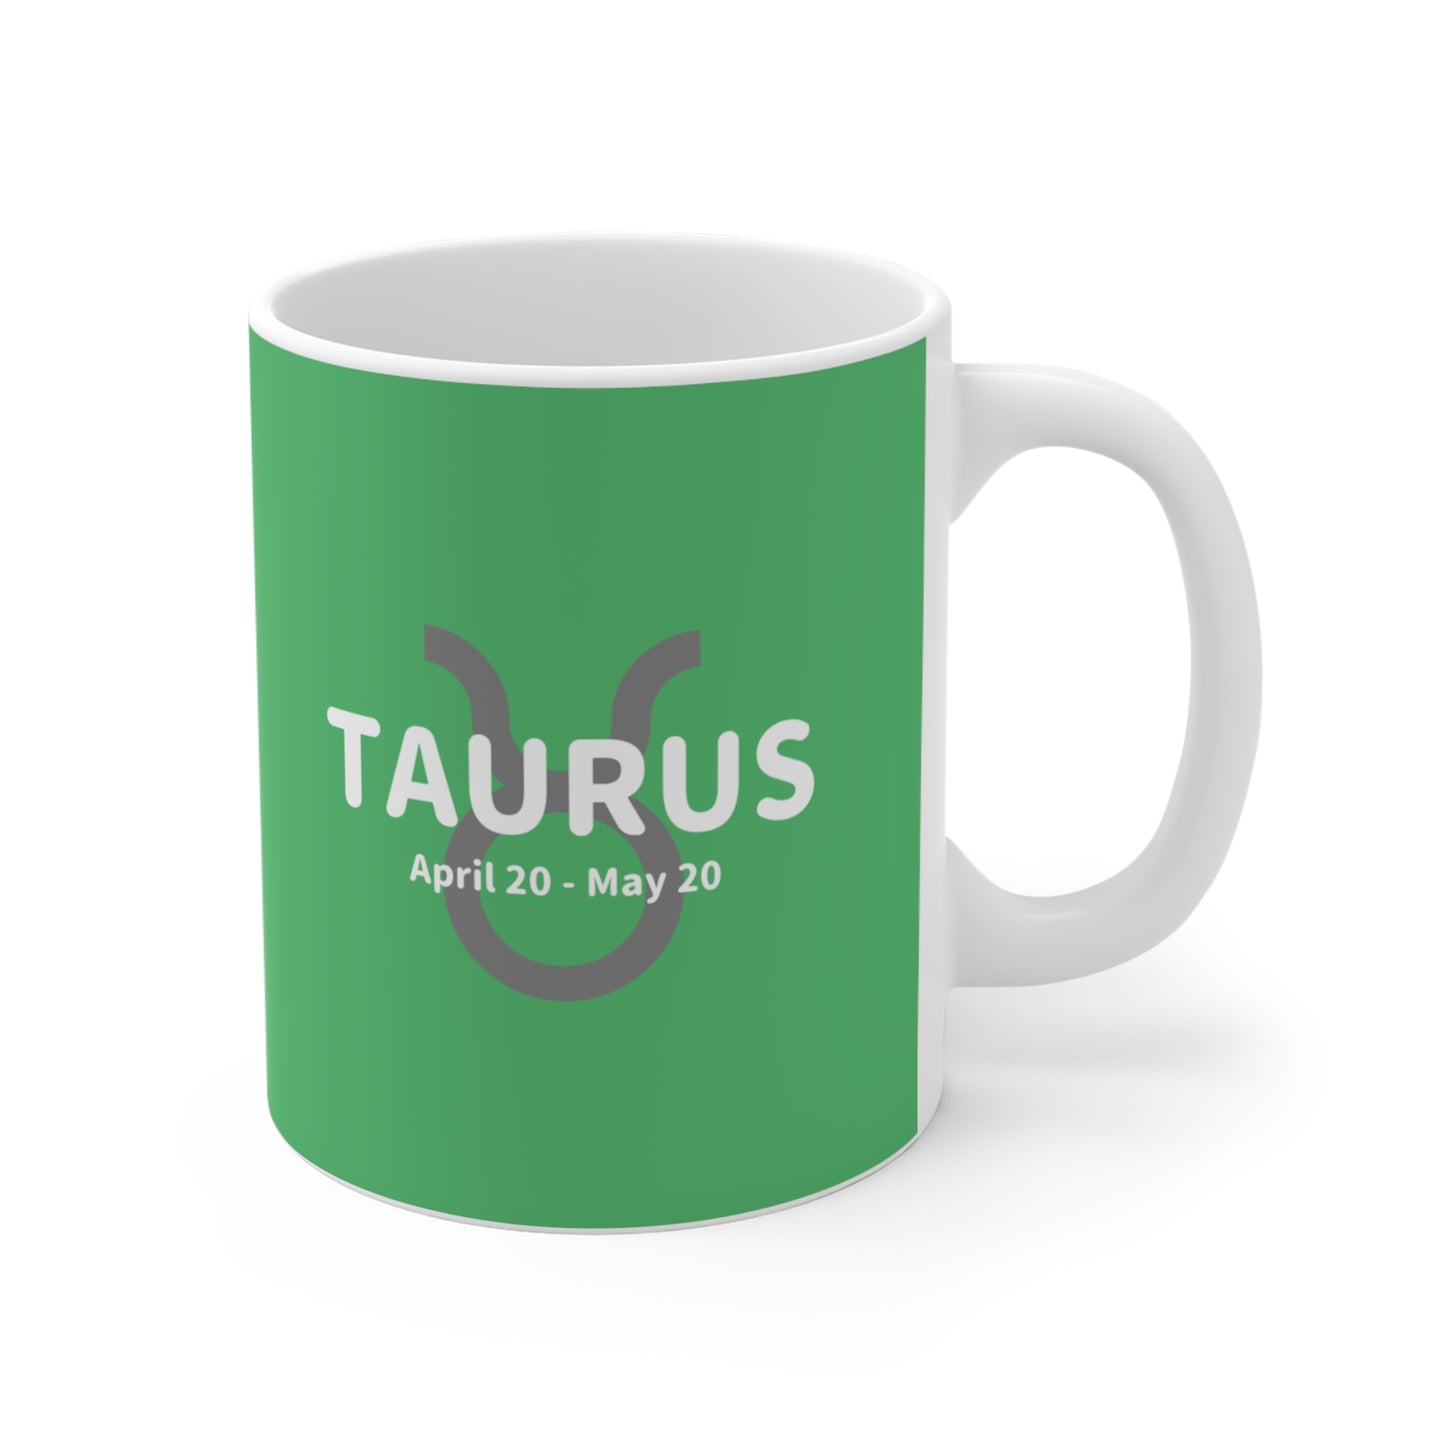 Taurus - etzart